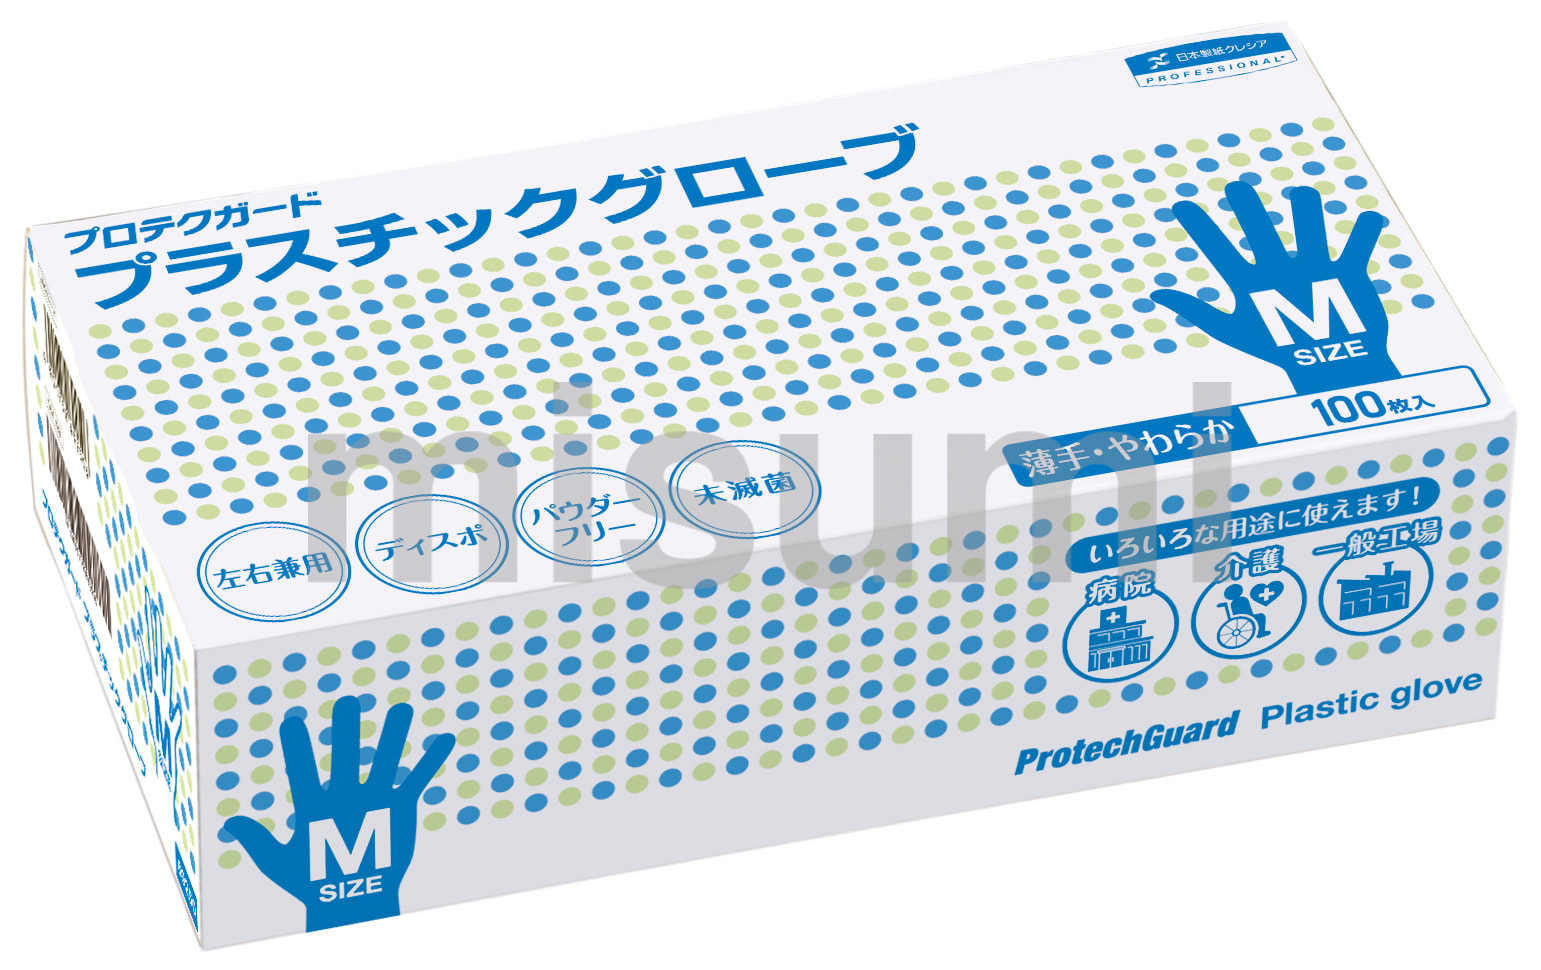 プロテクガード プラスチックグローブ 日本製紙クレシア MISUMI(ミスミ)